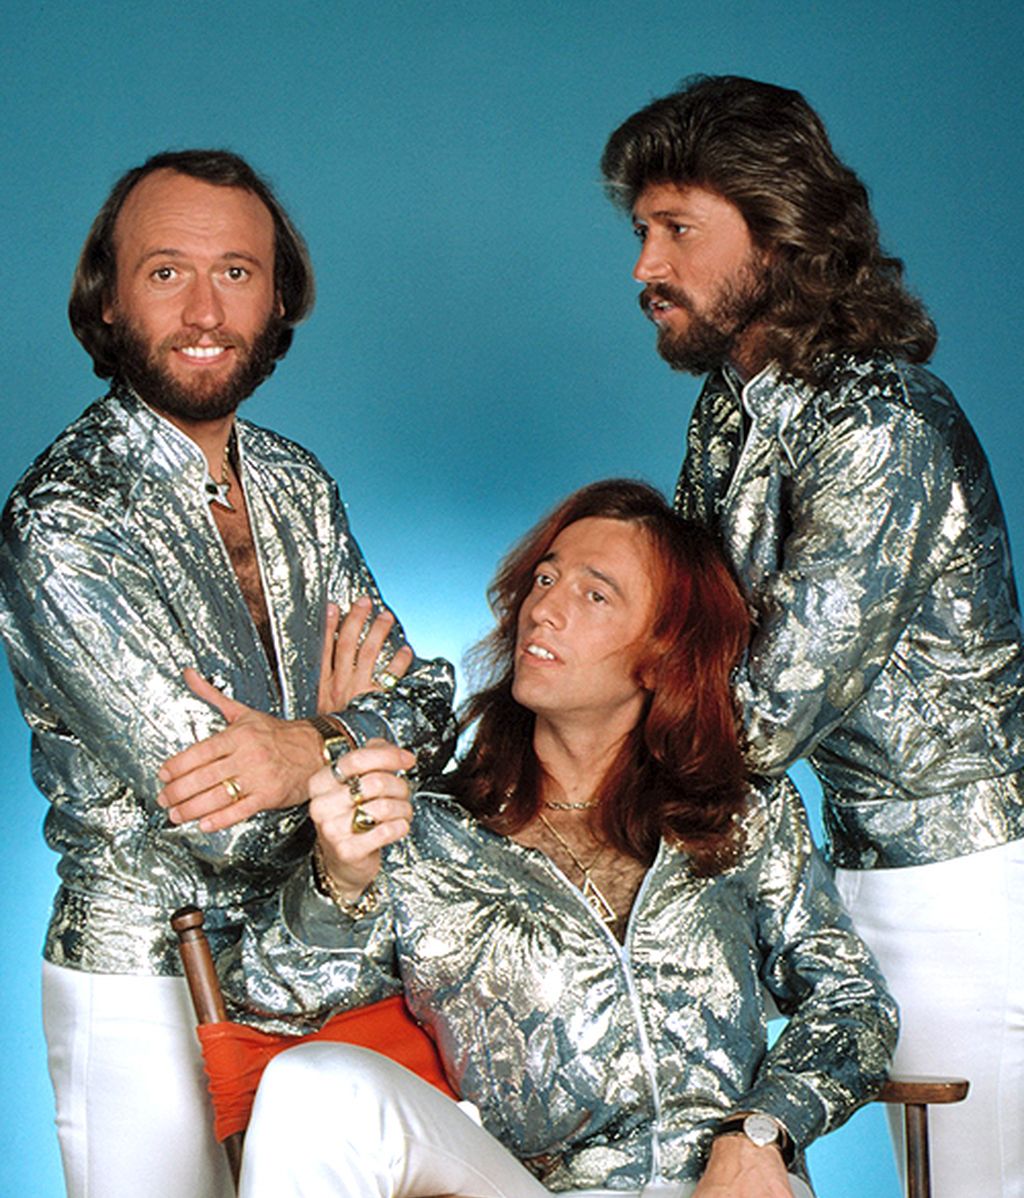 Homenaje al estilo de Robin y los Bee Gees: una vida de éxito y looks extremos